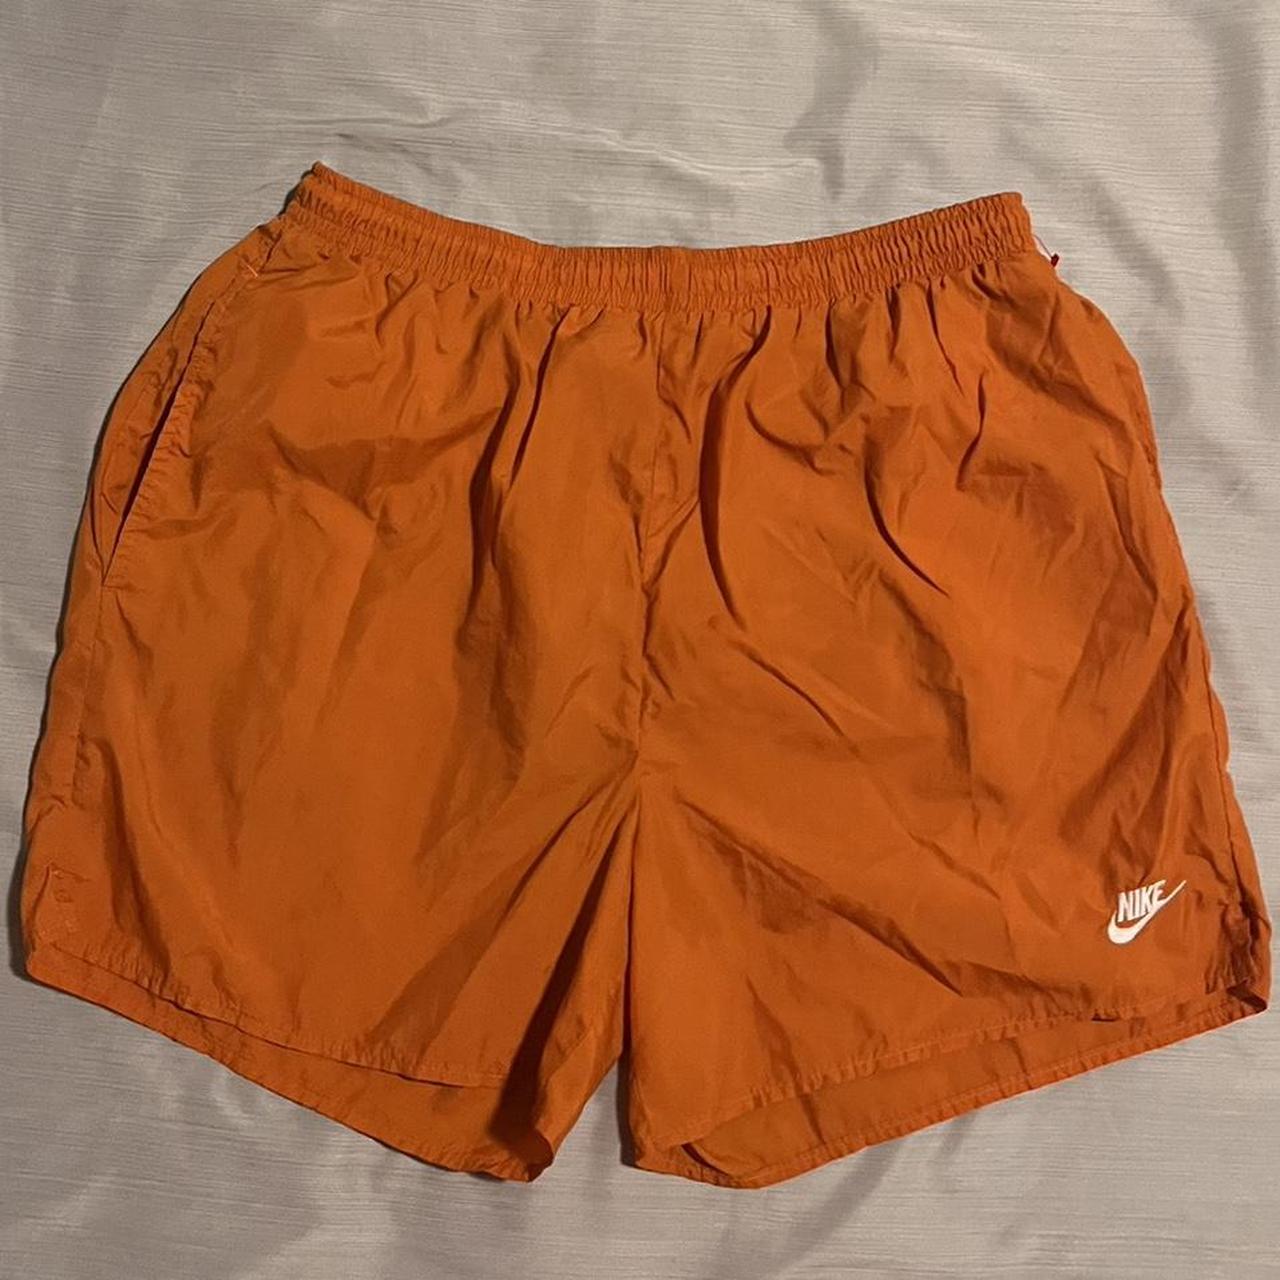 Nike Men's Orange and White Swim-briefs-shorts